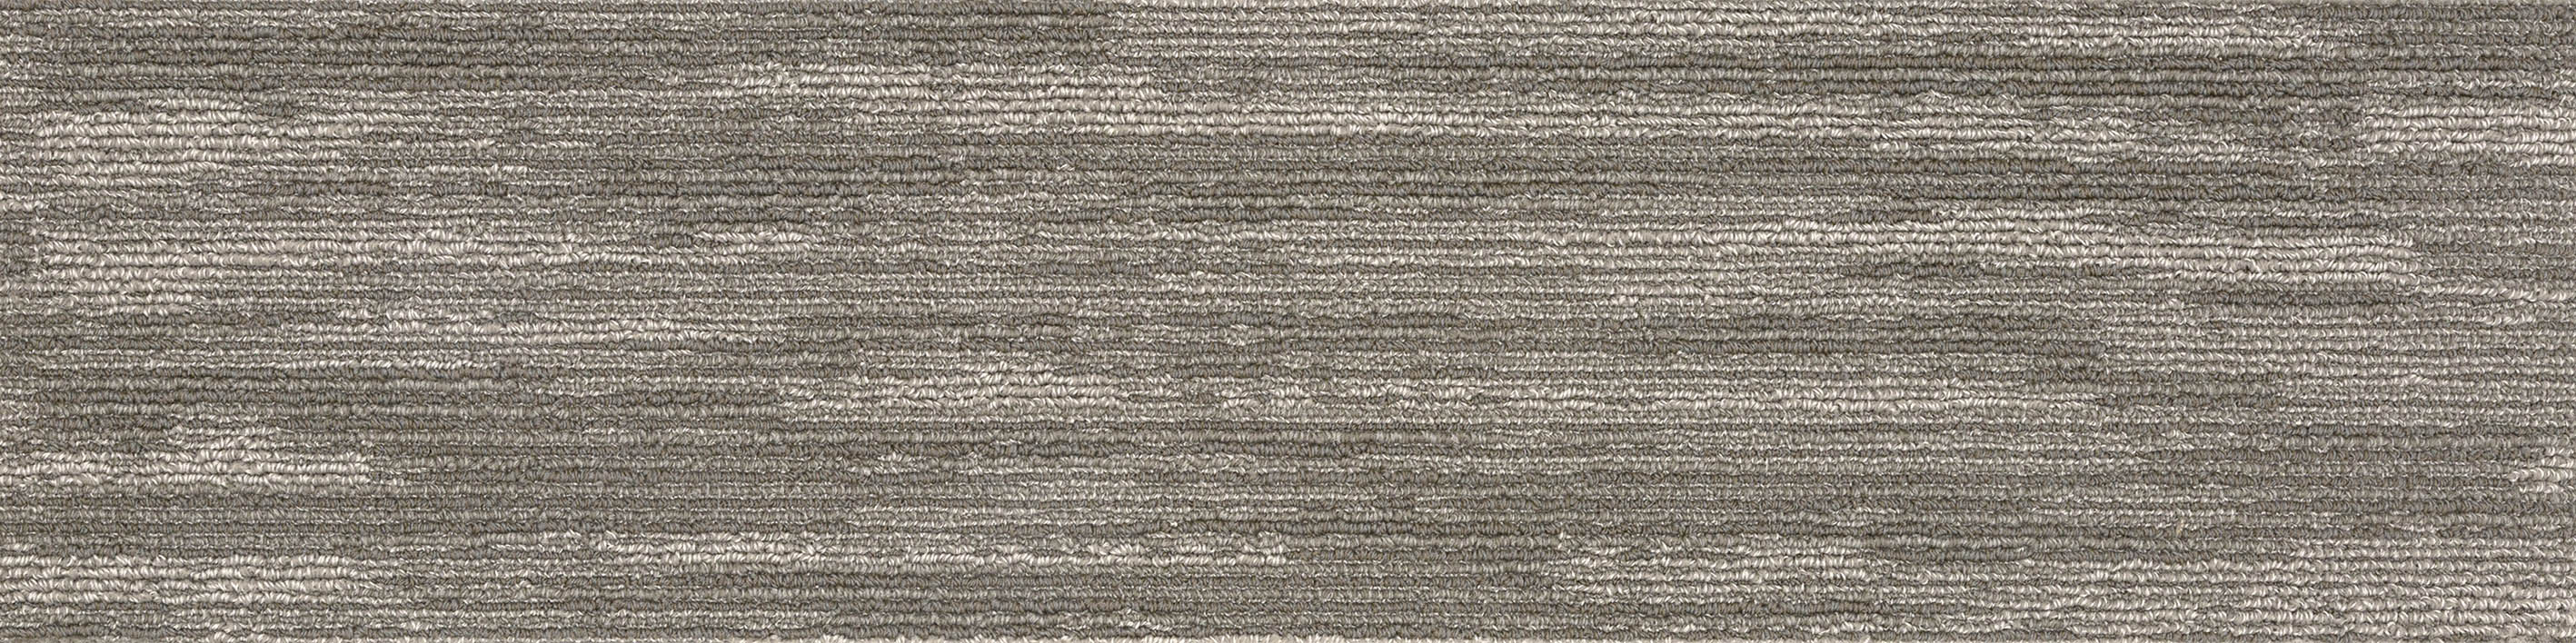 AB250-1 川島織物セルコン タイルカーペット モードスタイル シアトルプリーツ 川島織物セルコン タイルカーペット